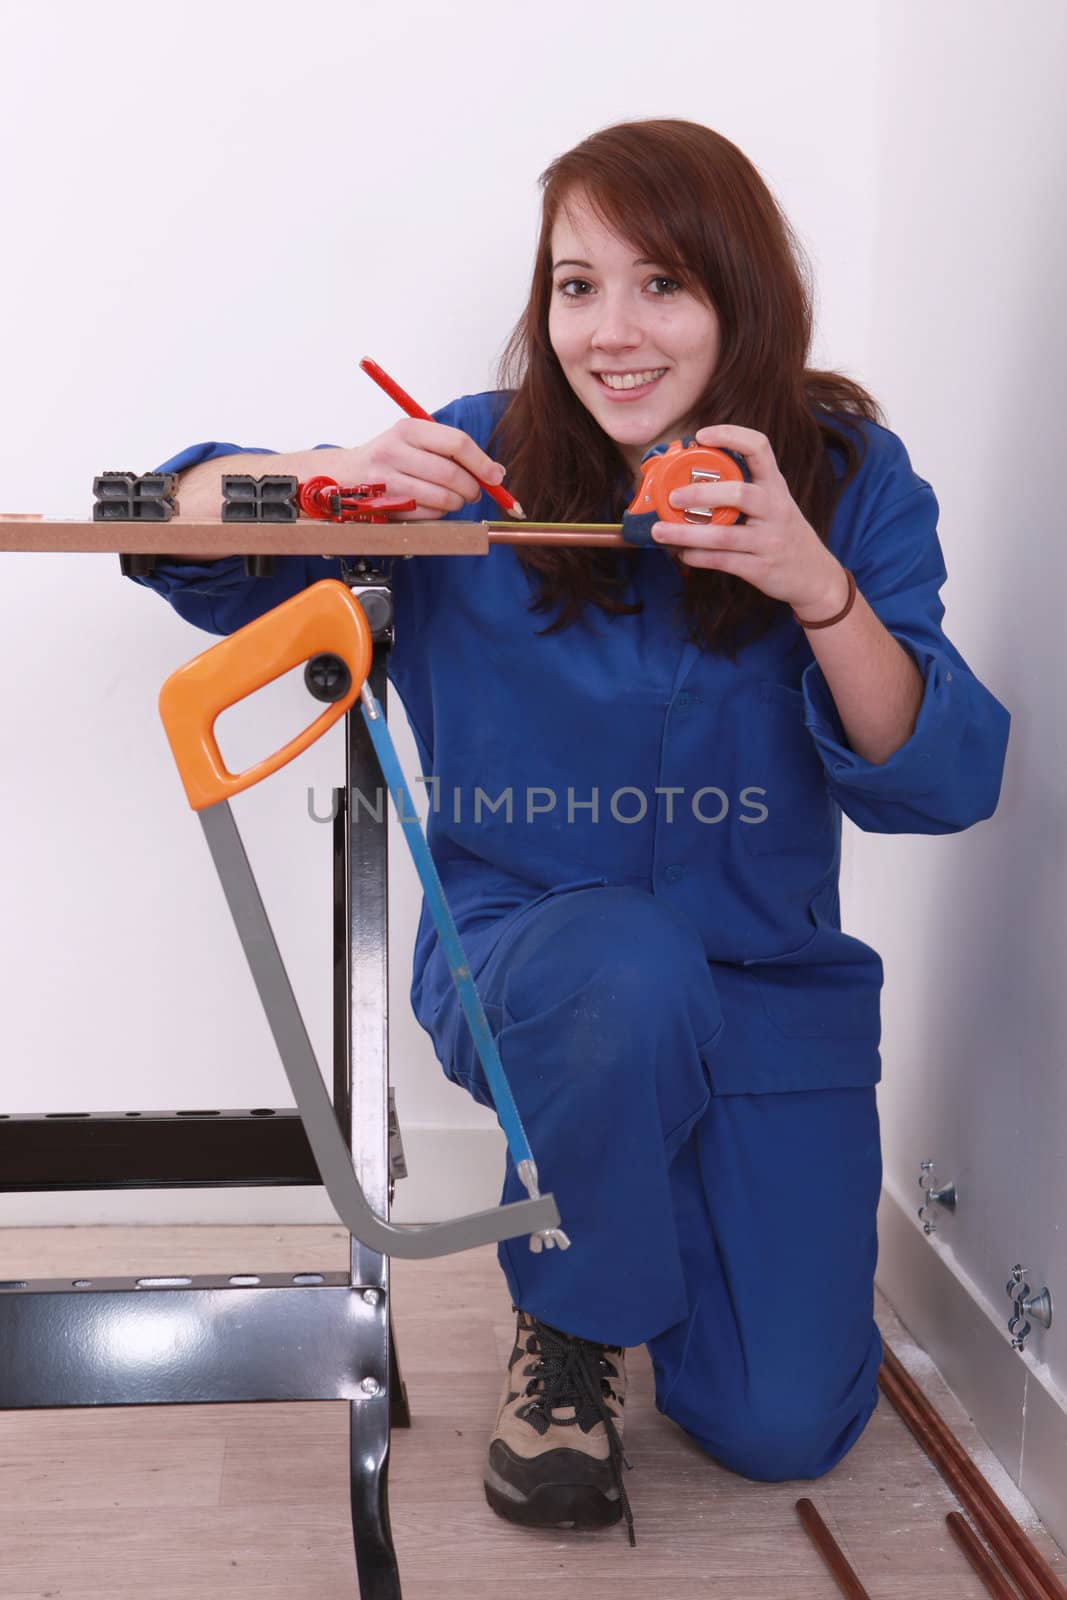 craftswoman taking measurements